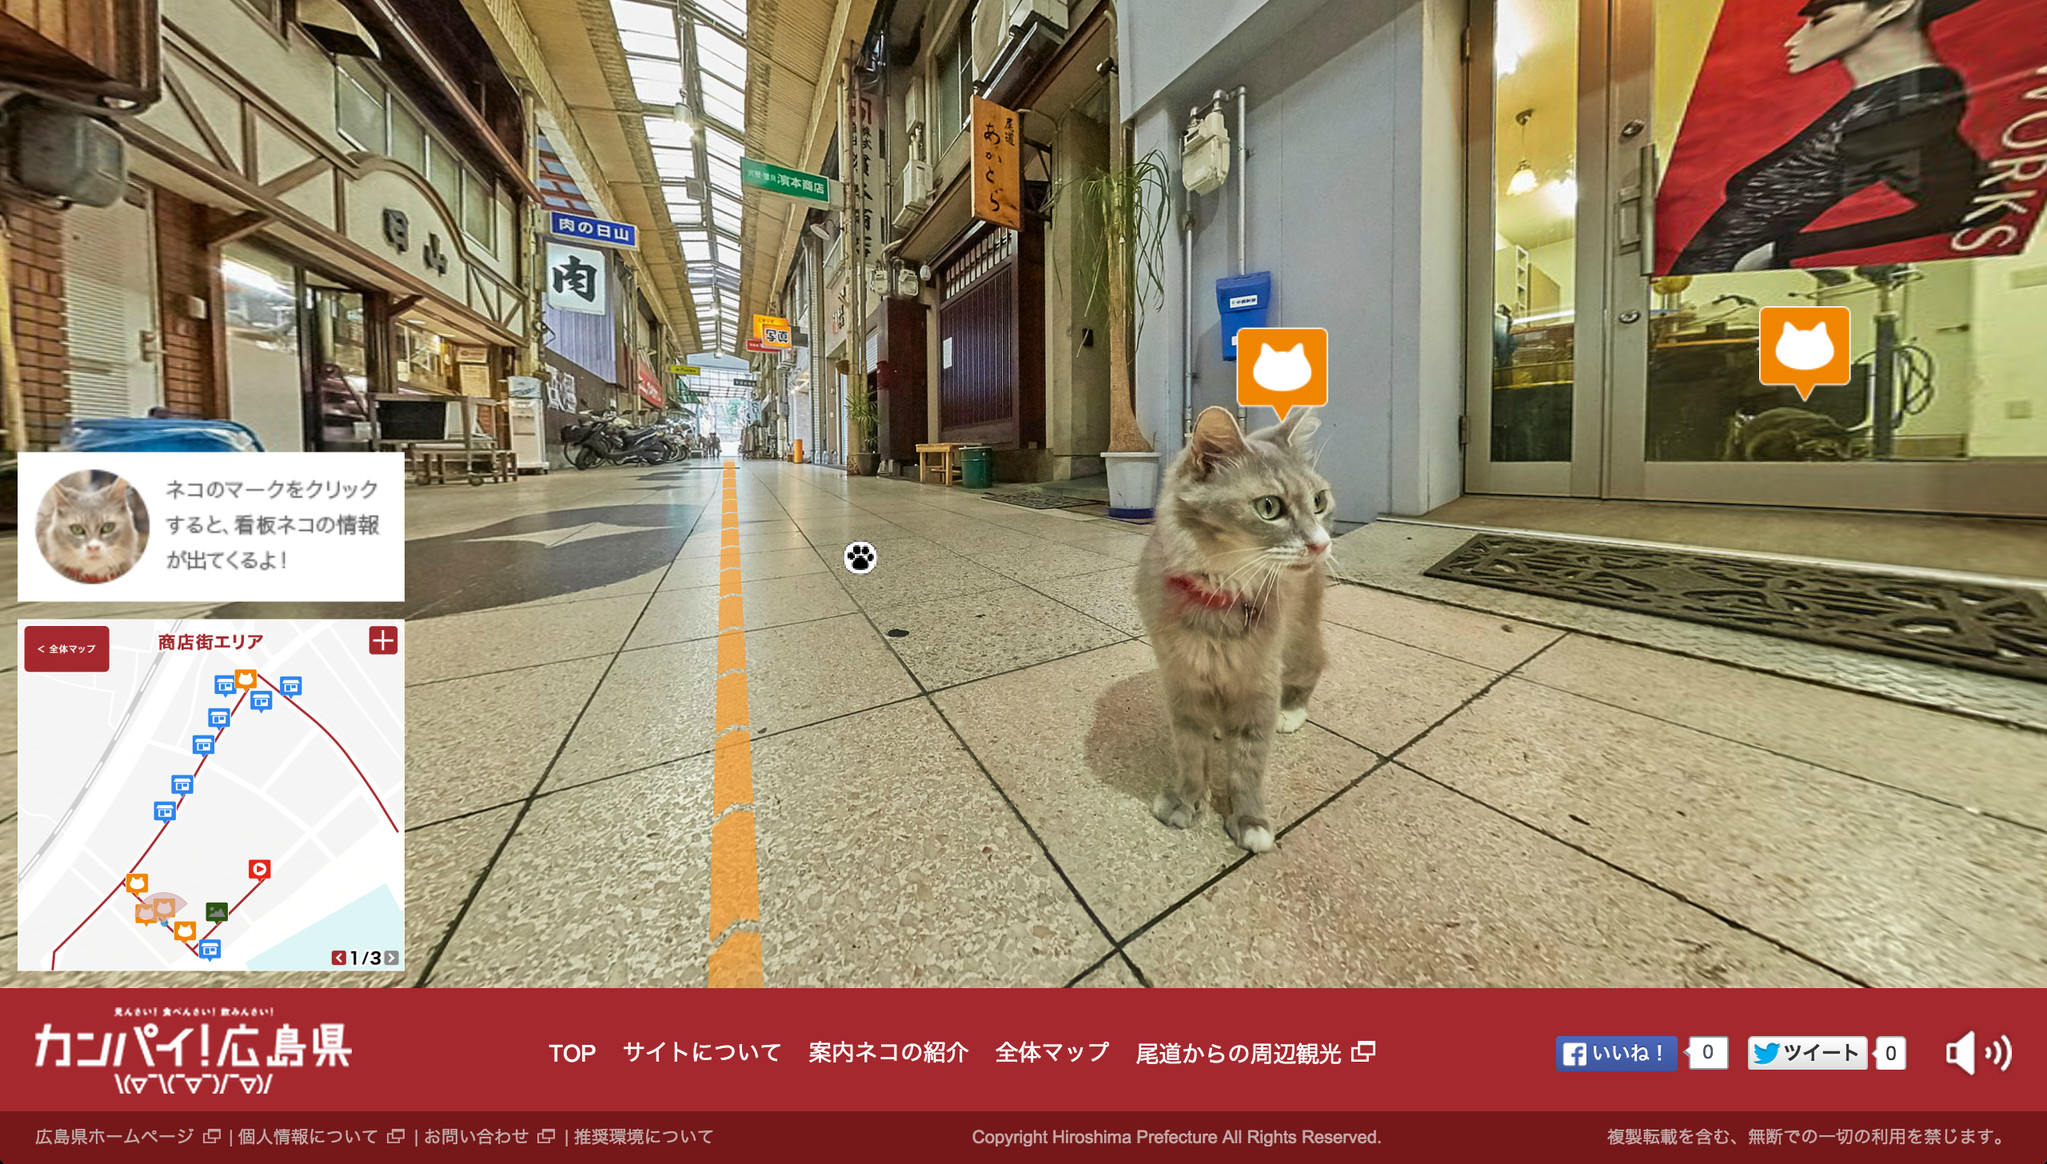 世界初 ネコの目線で街を探索できる観光ガイド 広島cat Street View尾道編 9 1公開 広島県のプレスリリース